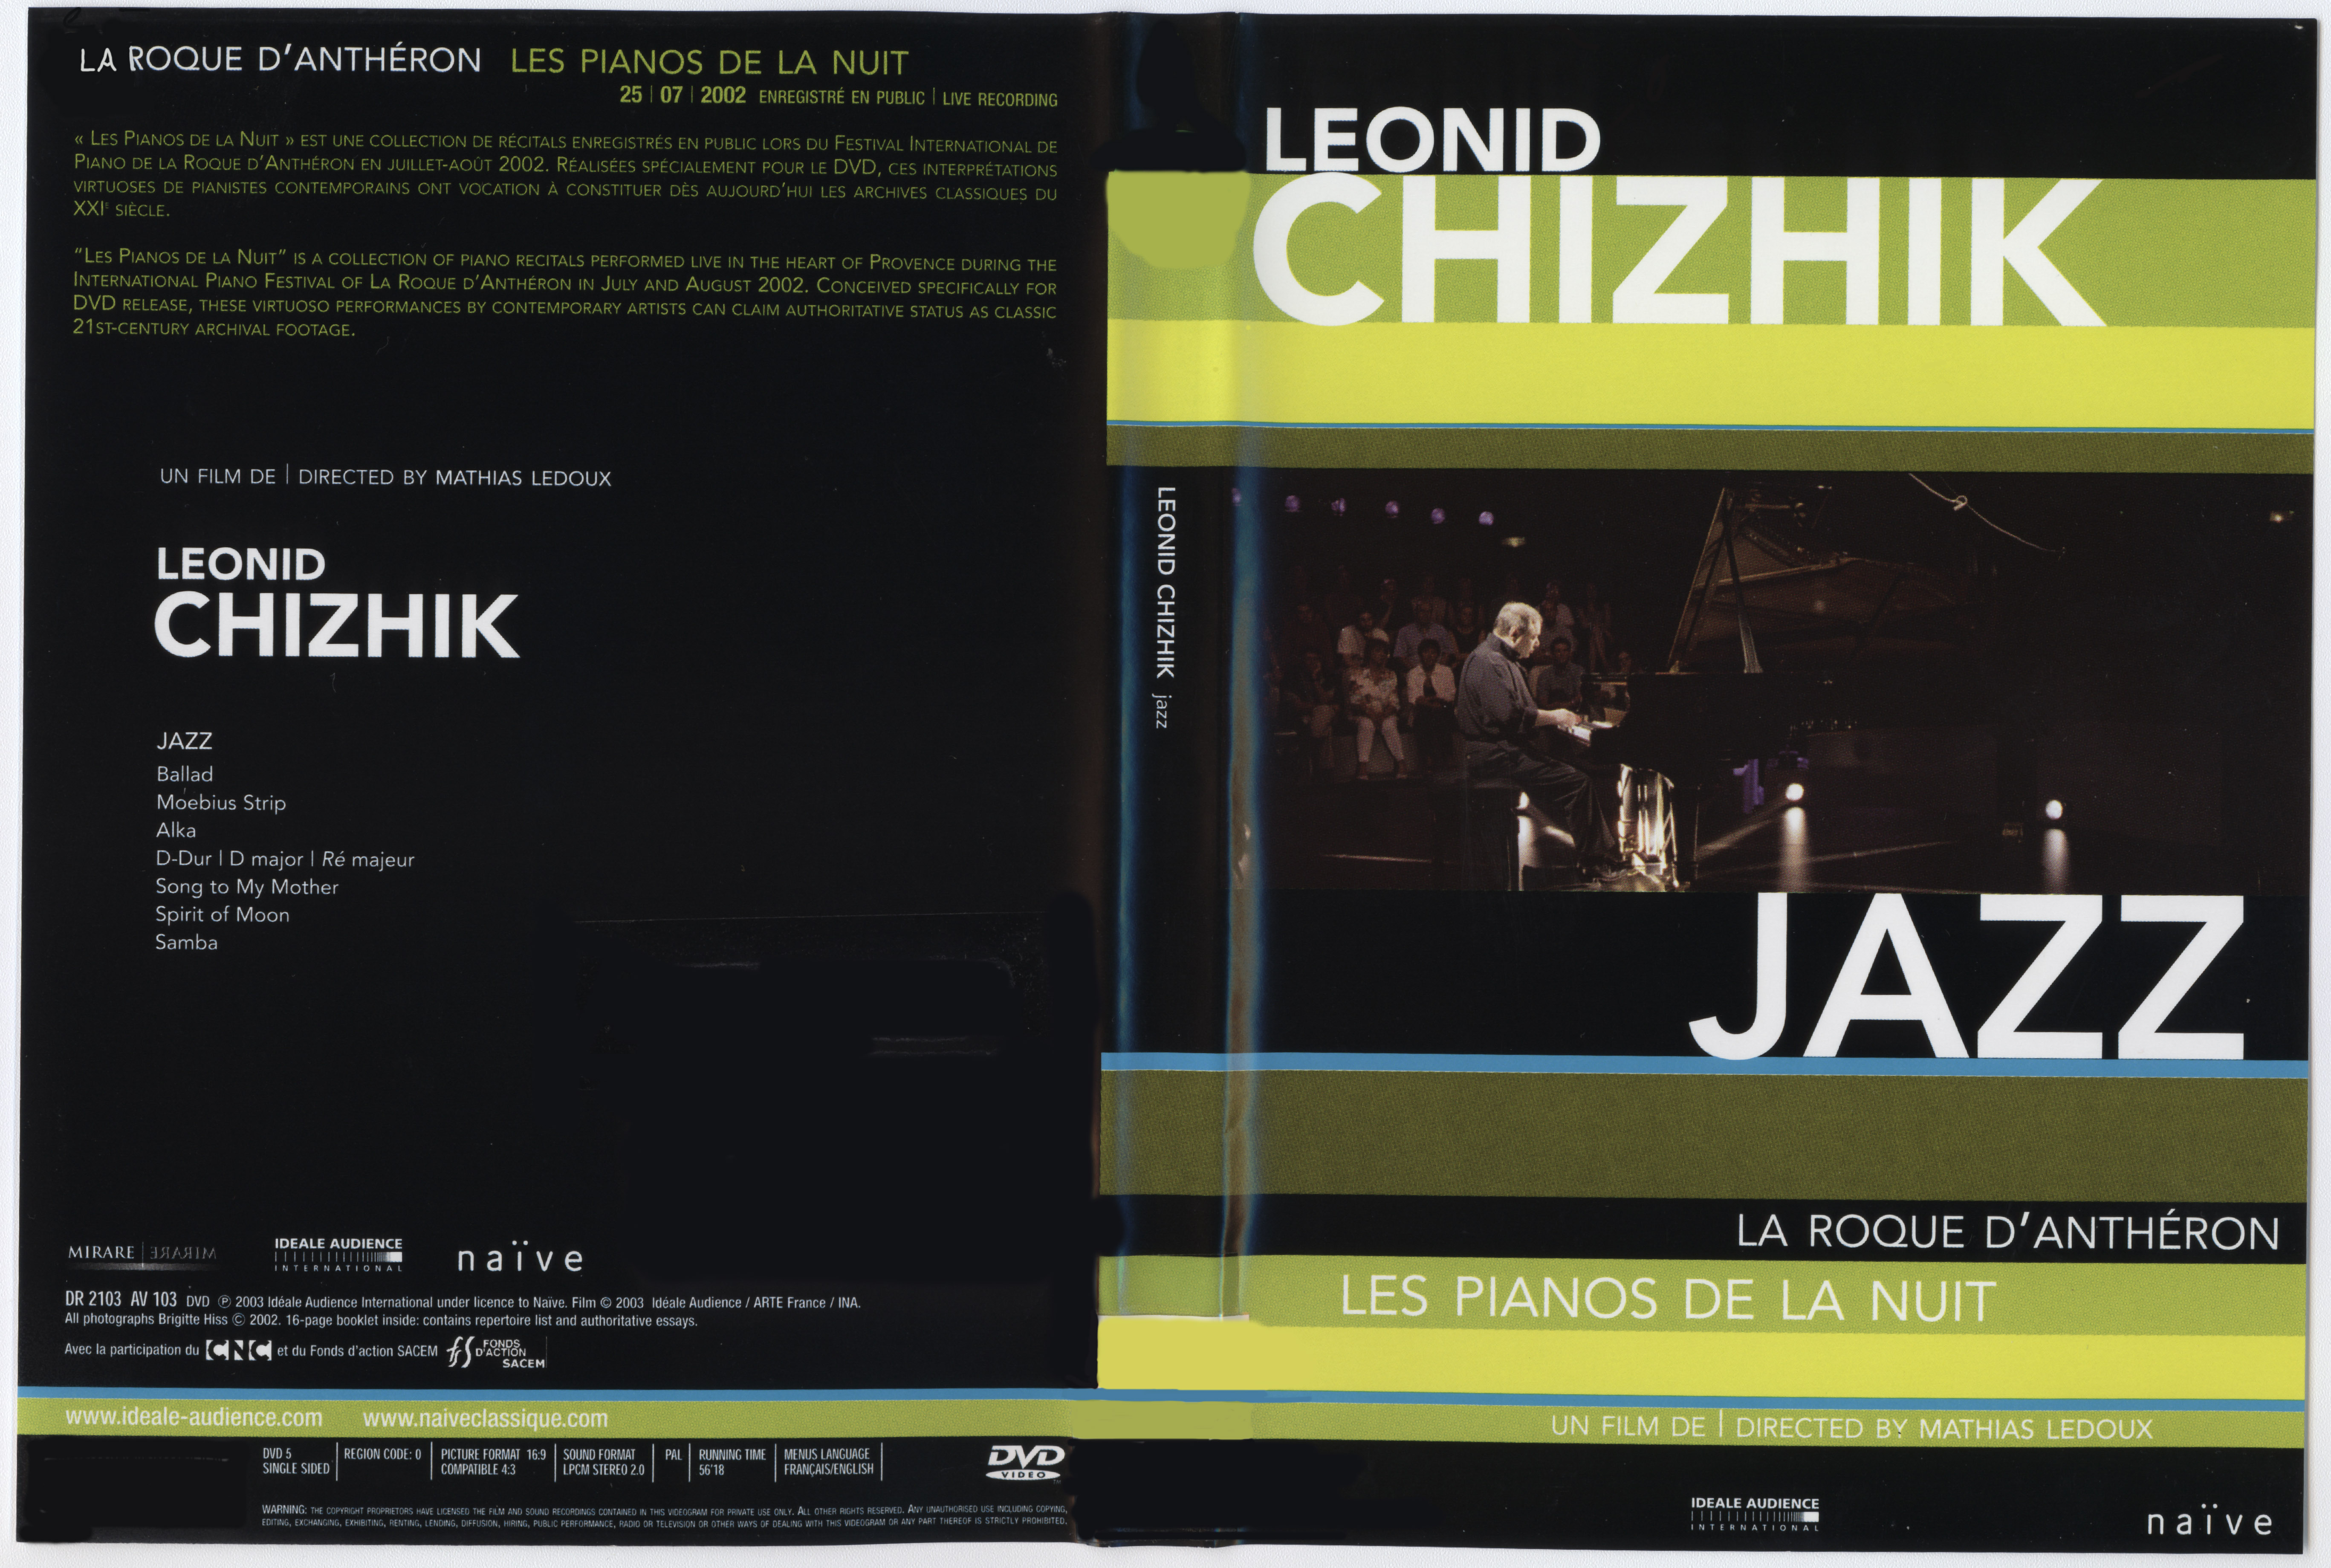 Jaquette DVD Leonid Chizhik